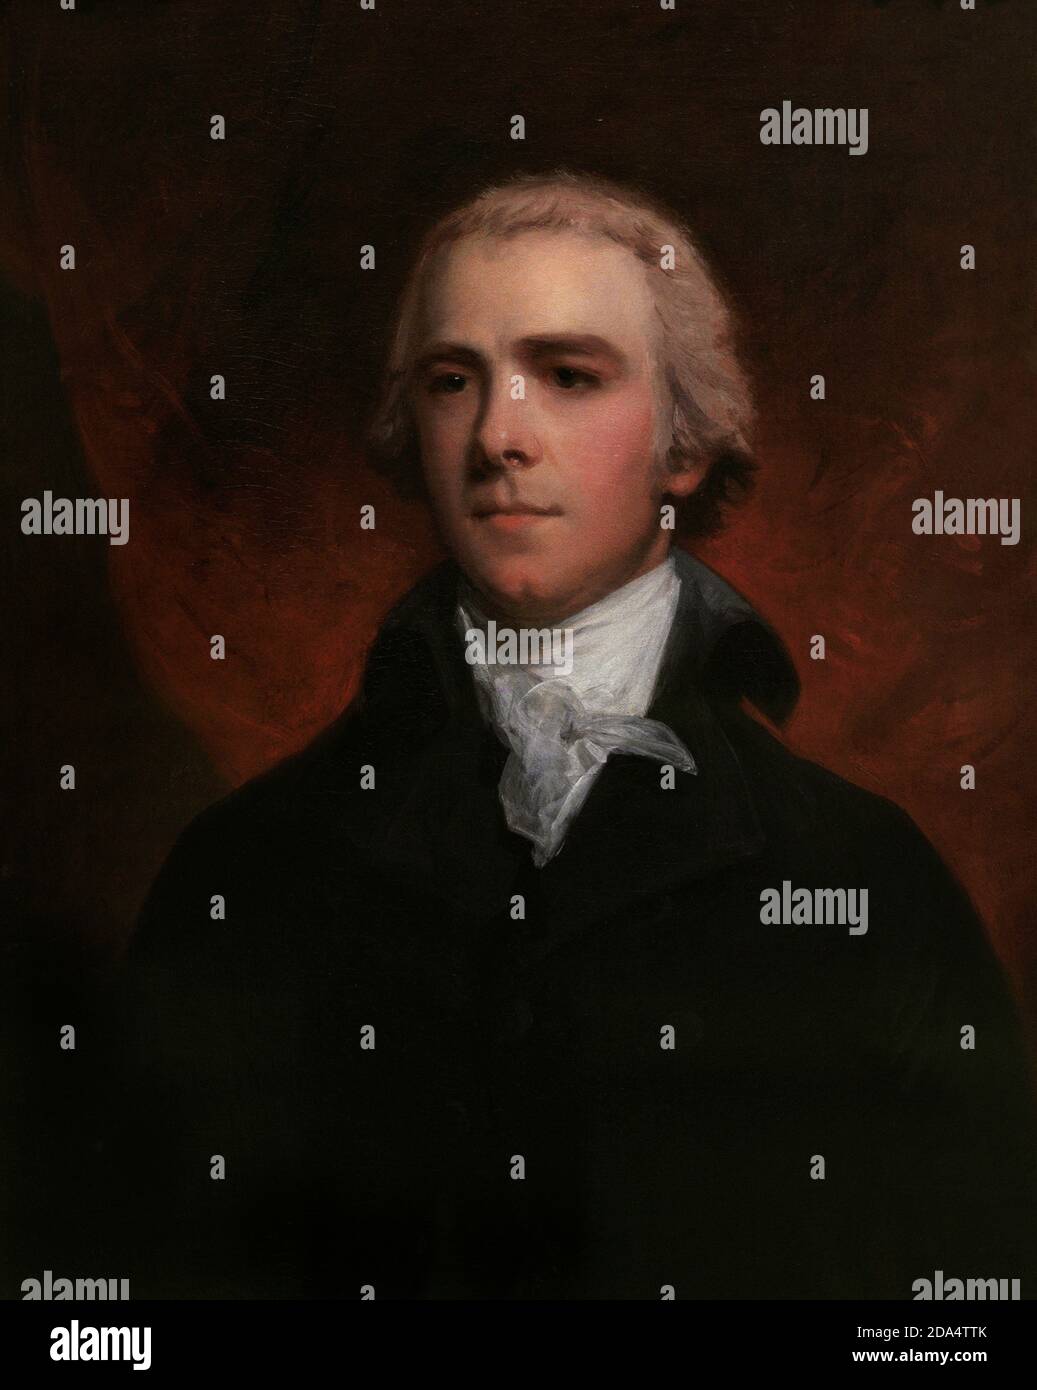 William Wyndham Grenville (1759-1834). 1. Baron Grenville. Britischer Politiker. Pittite Tory, der 1879 als Sprecher des Unterhauses und Außenminister (1791-1801) fungierte. Premierminister des Vereinigten Königreichs von 1806 bis 1807. Porträt von John Hoppner (1758-1810). Öl auf Leinwand (76,8 x 63,5 cm), c. 1800. National Portrait Gallery. London, England, Vereinigtes Königreich. Stockfoto